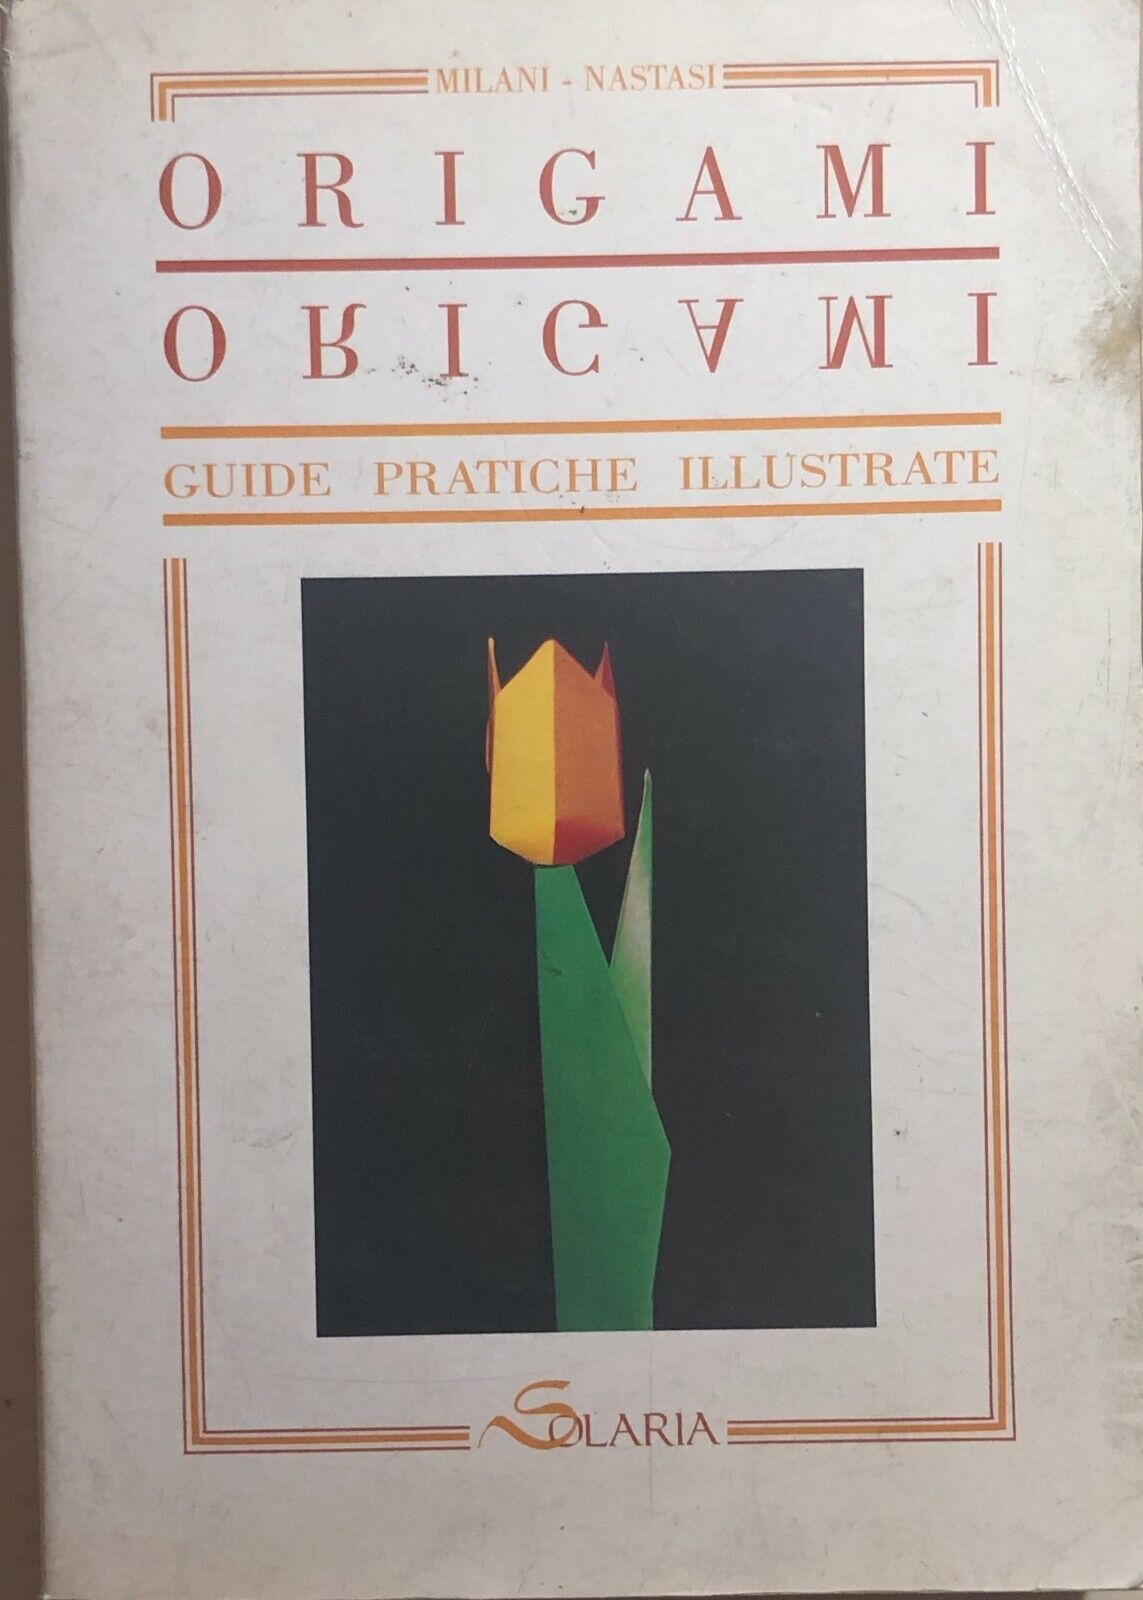 Origami, guide pratiche illustrate di Milani-Nastasi, 1990, Solaria